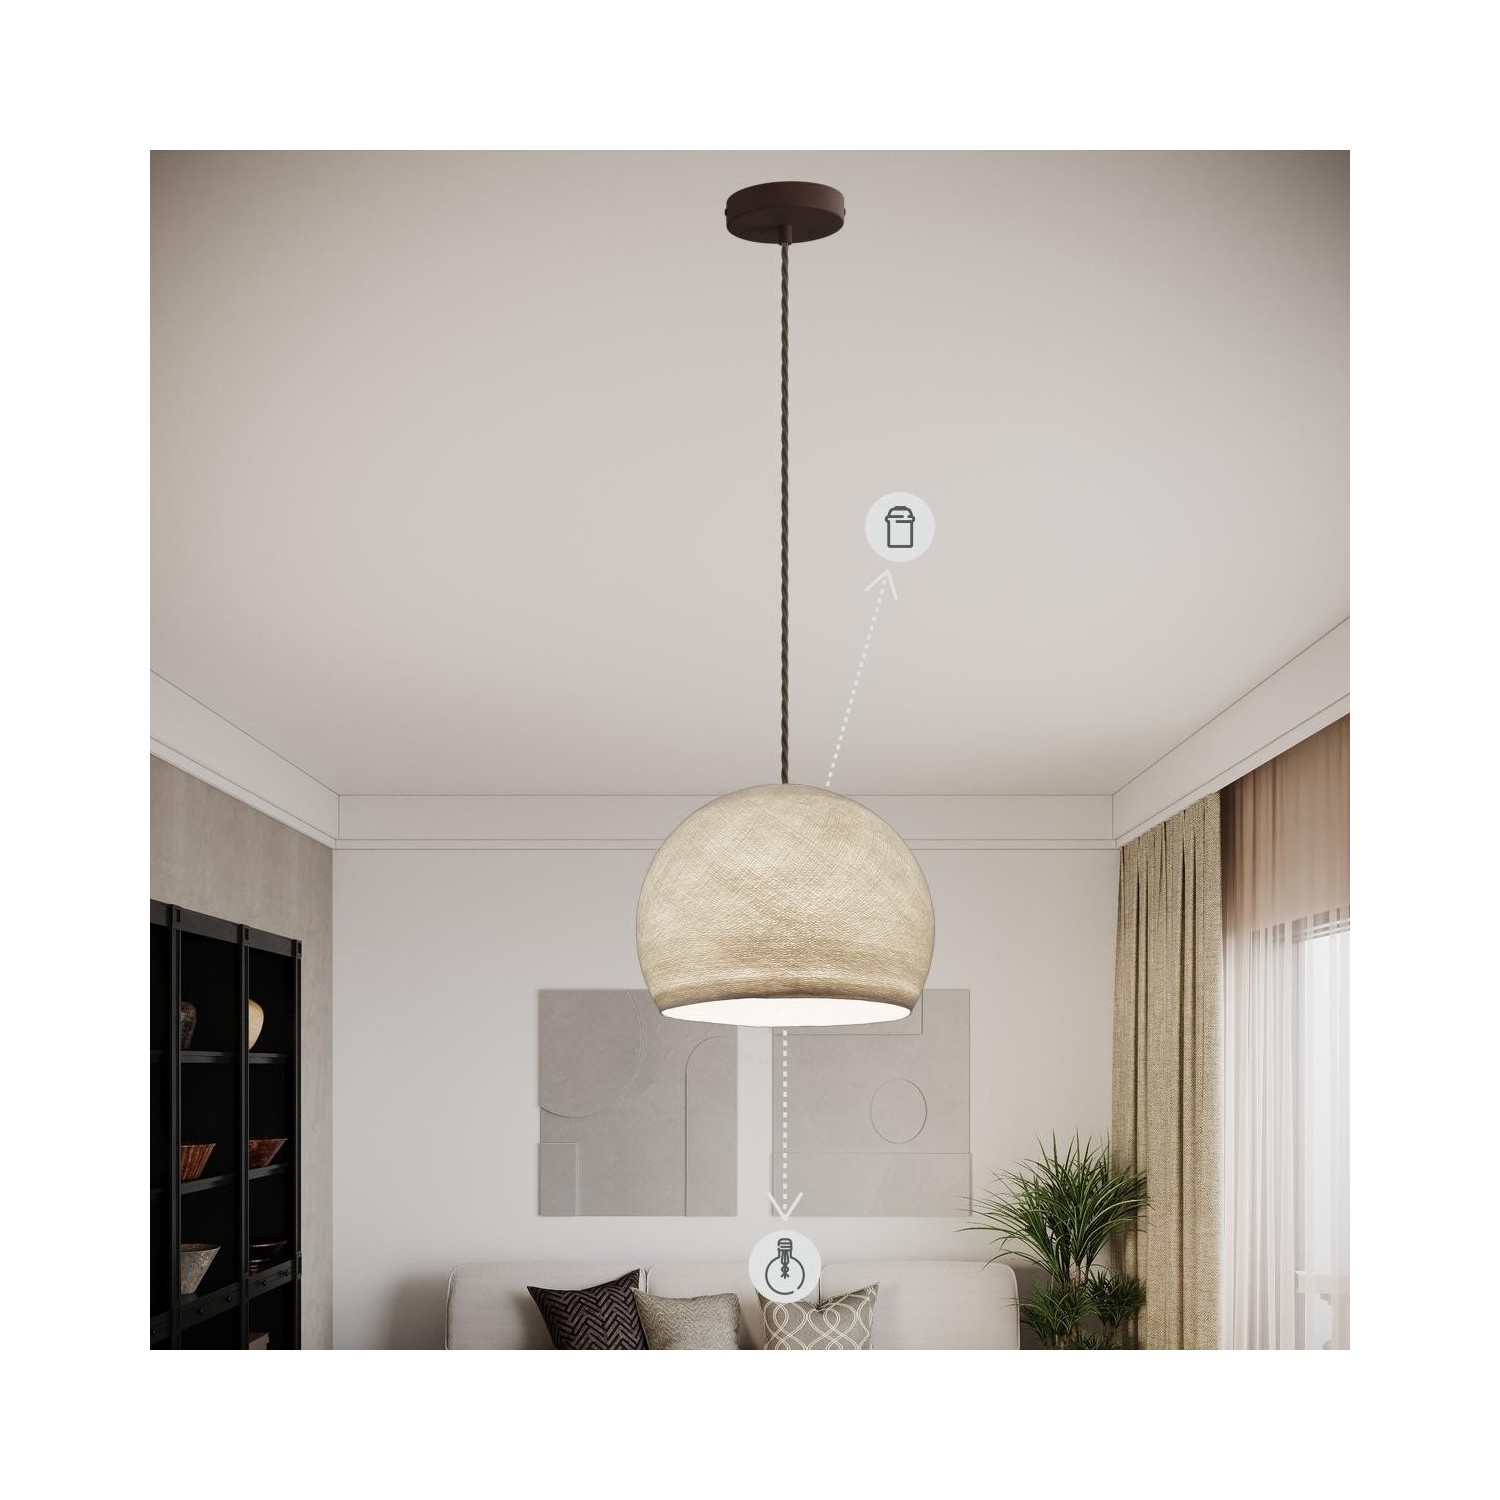 EIVA ELEGANT Lampe à suspension avec 5 m câble textile, abat-jour Ellepì, rosace et douille en silicone IP65 étanche